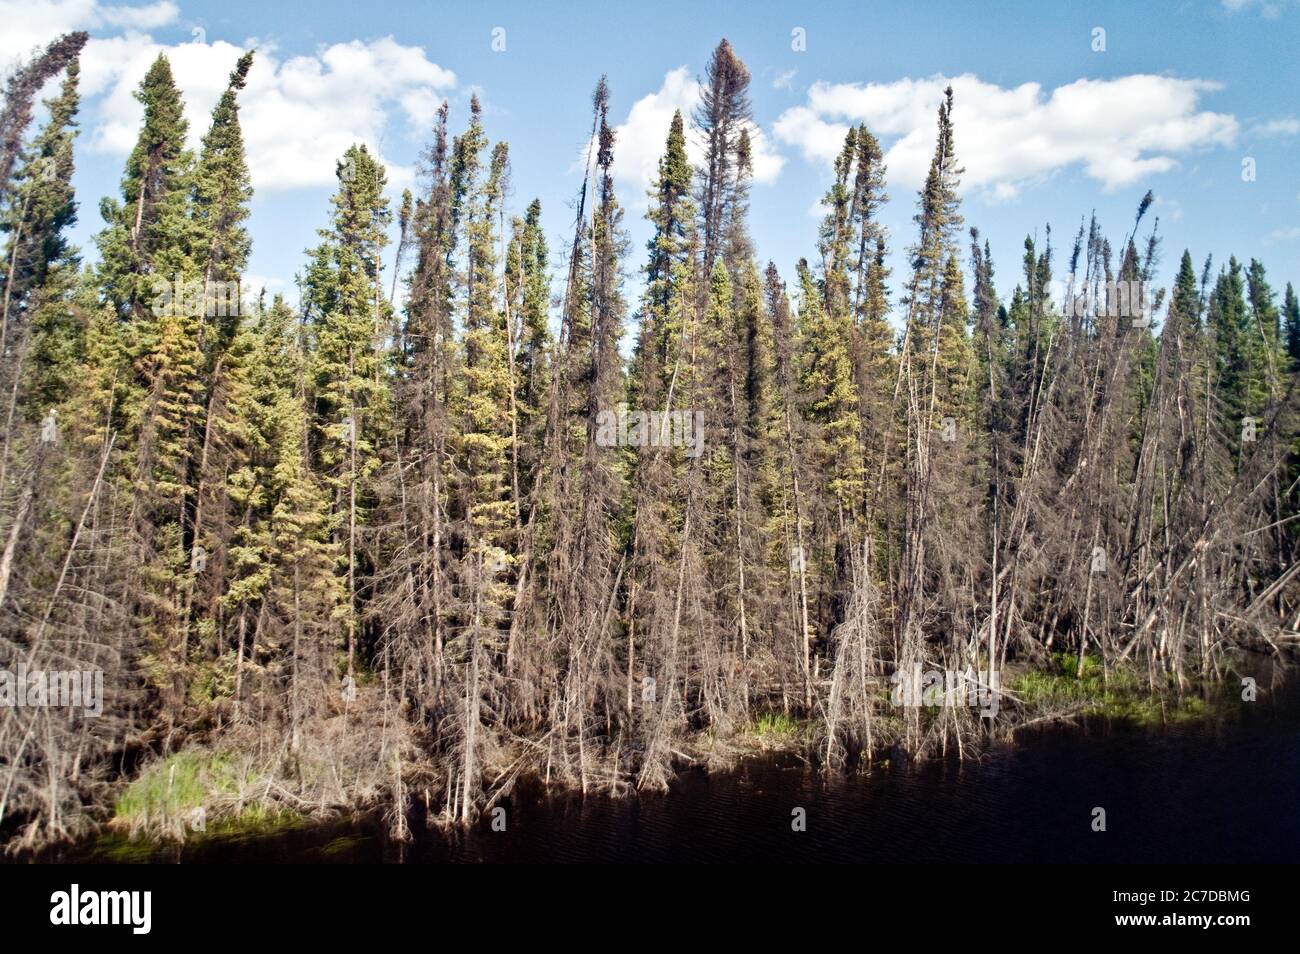 Terres humides, tourbières et forêts de conifères dans la forêt boréale éloignée, près de The pas, dans le nord du Manitoba, au Canada. Banque D'Images